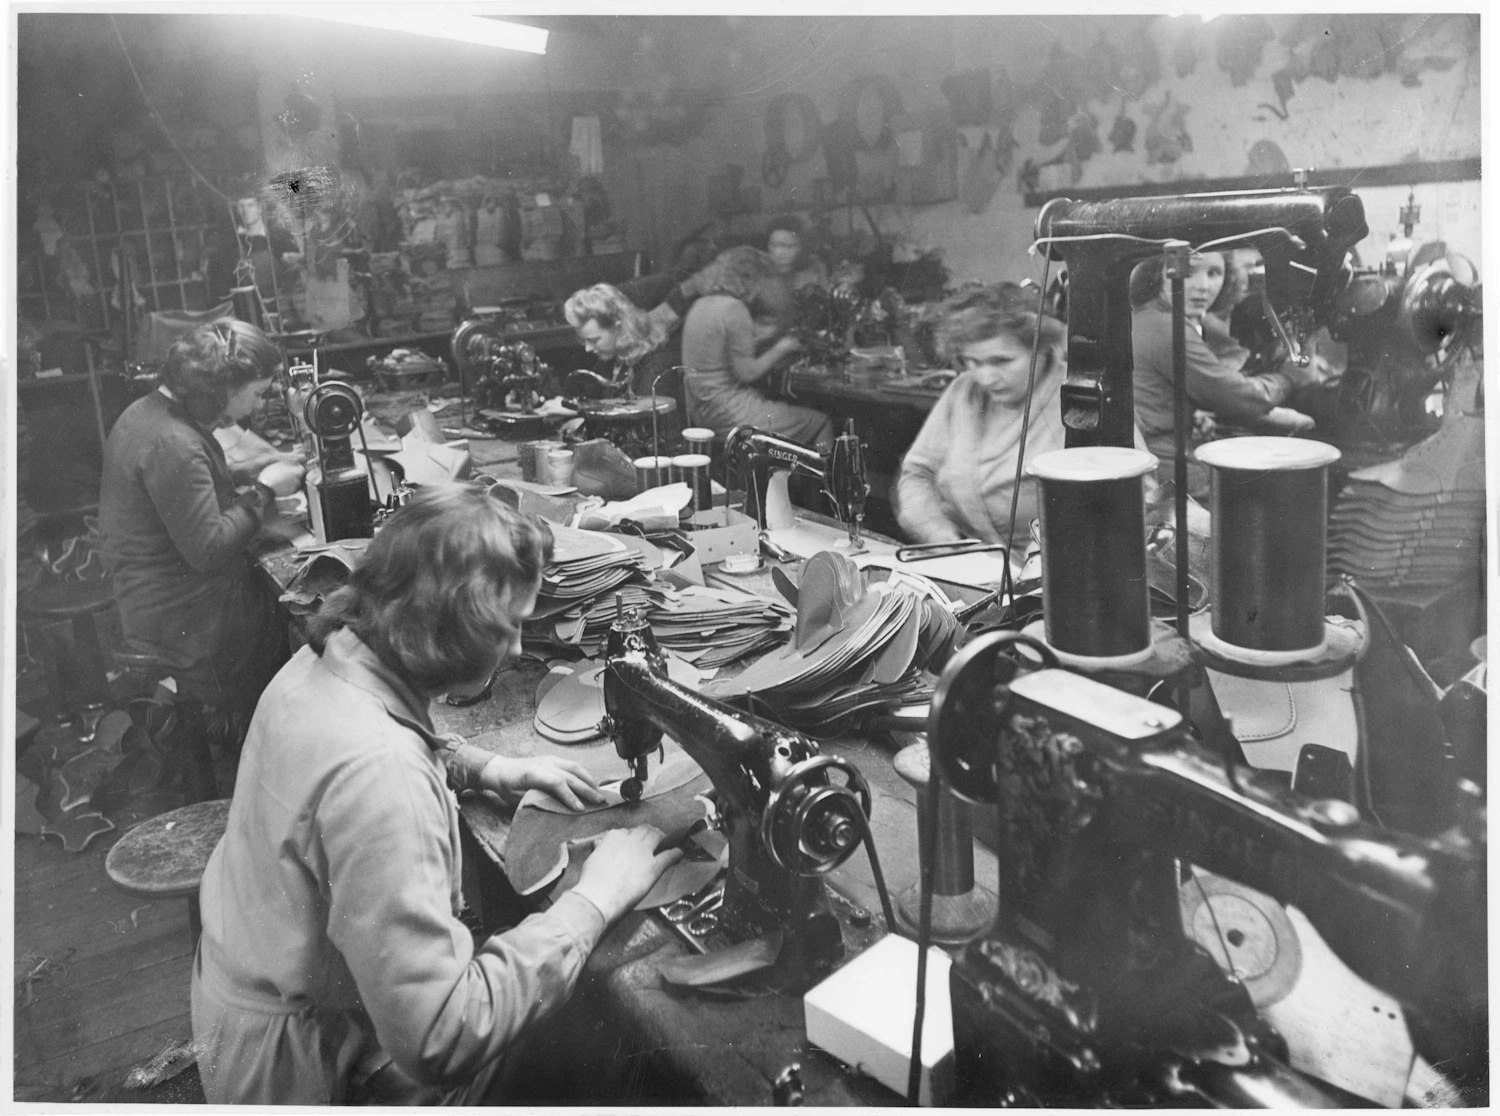 1900年代初頭の工場の縫製室の様子